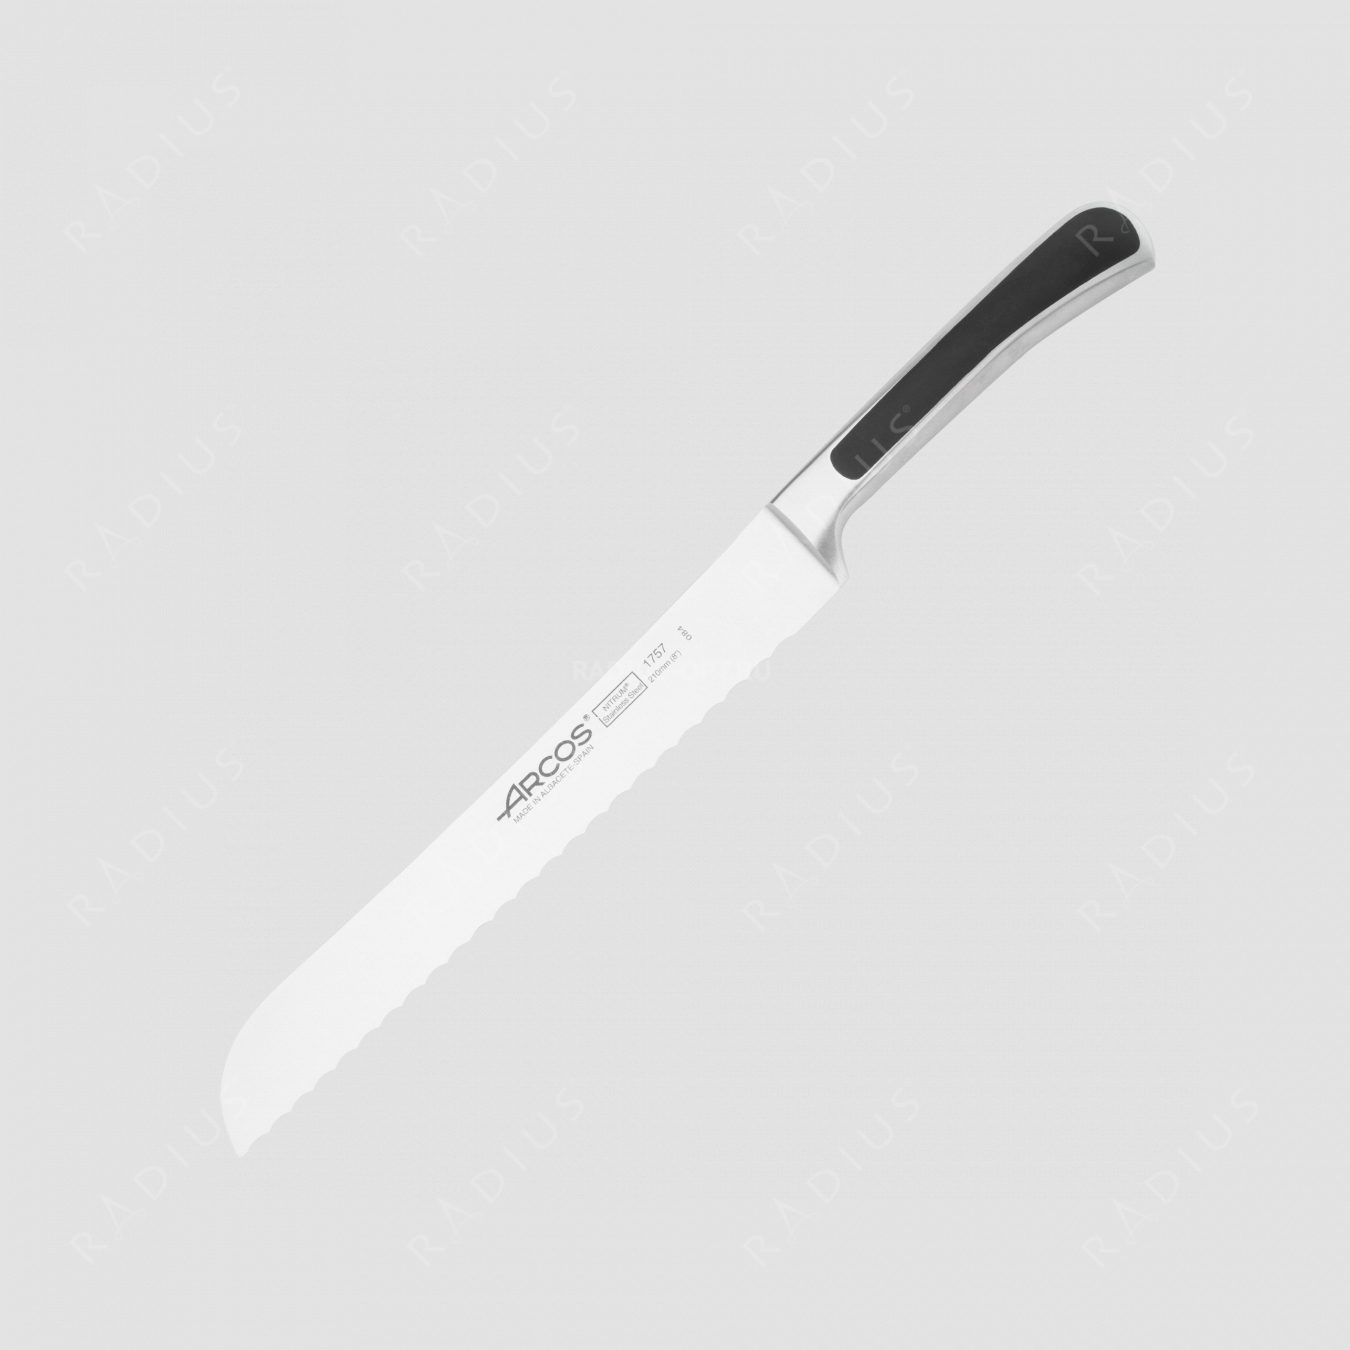 Нож кухонный для хлеба 21 см, серия Saeta, ARCOS, Испания